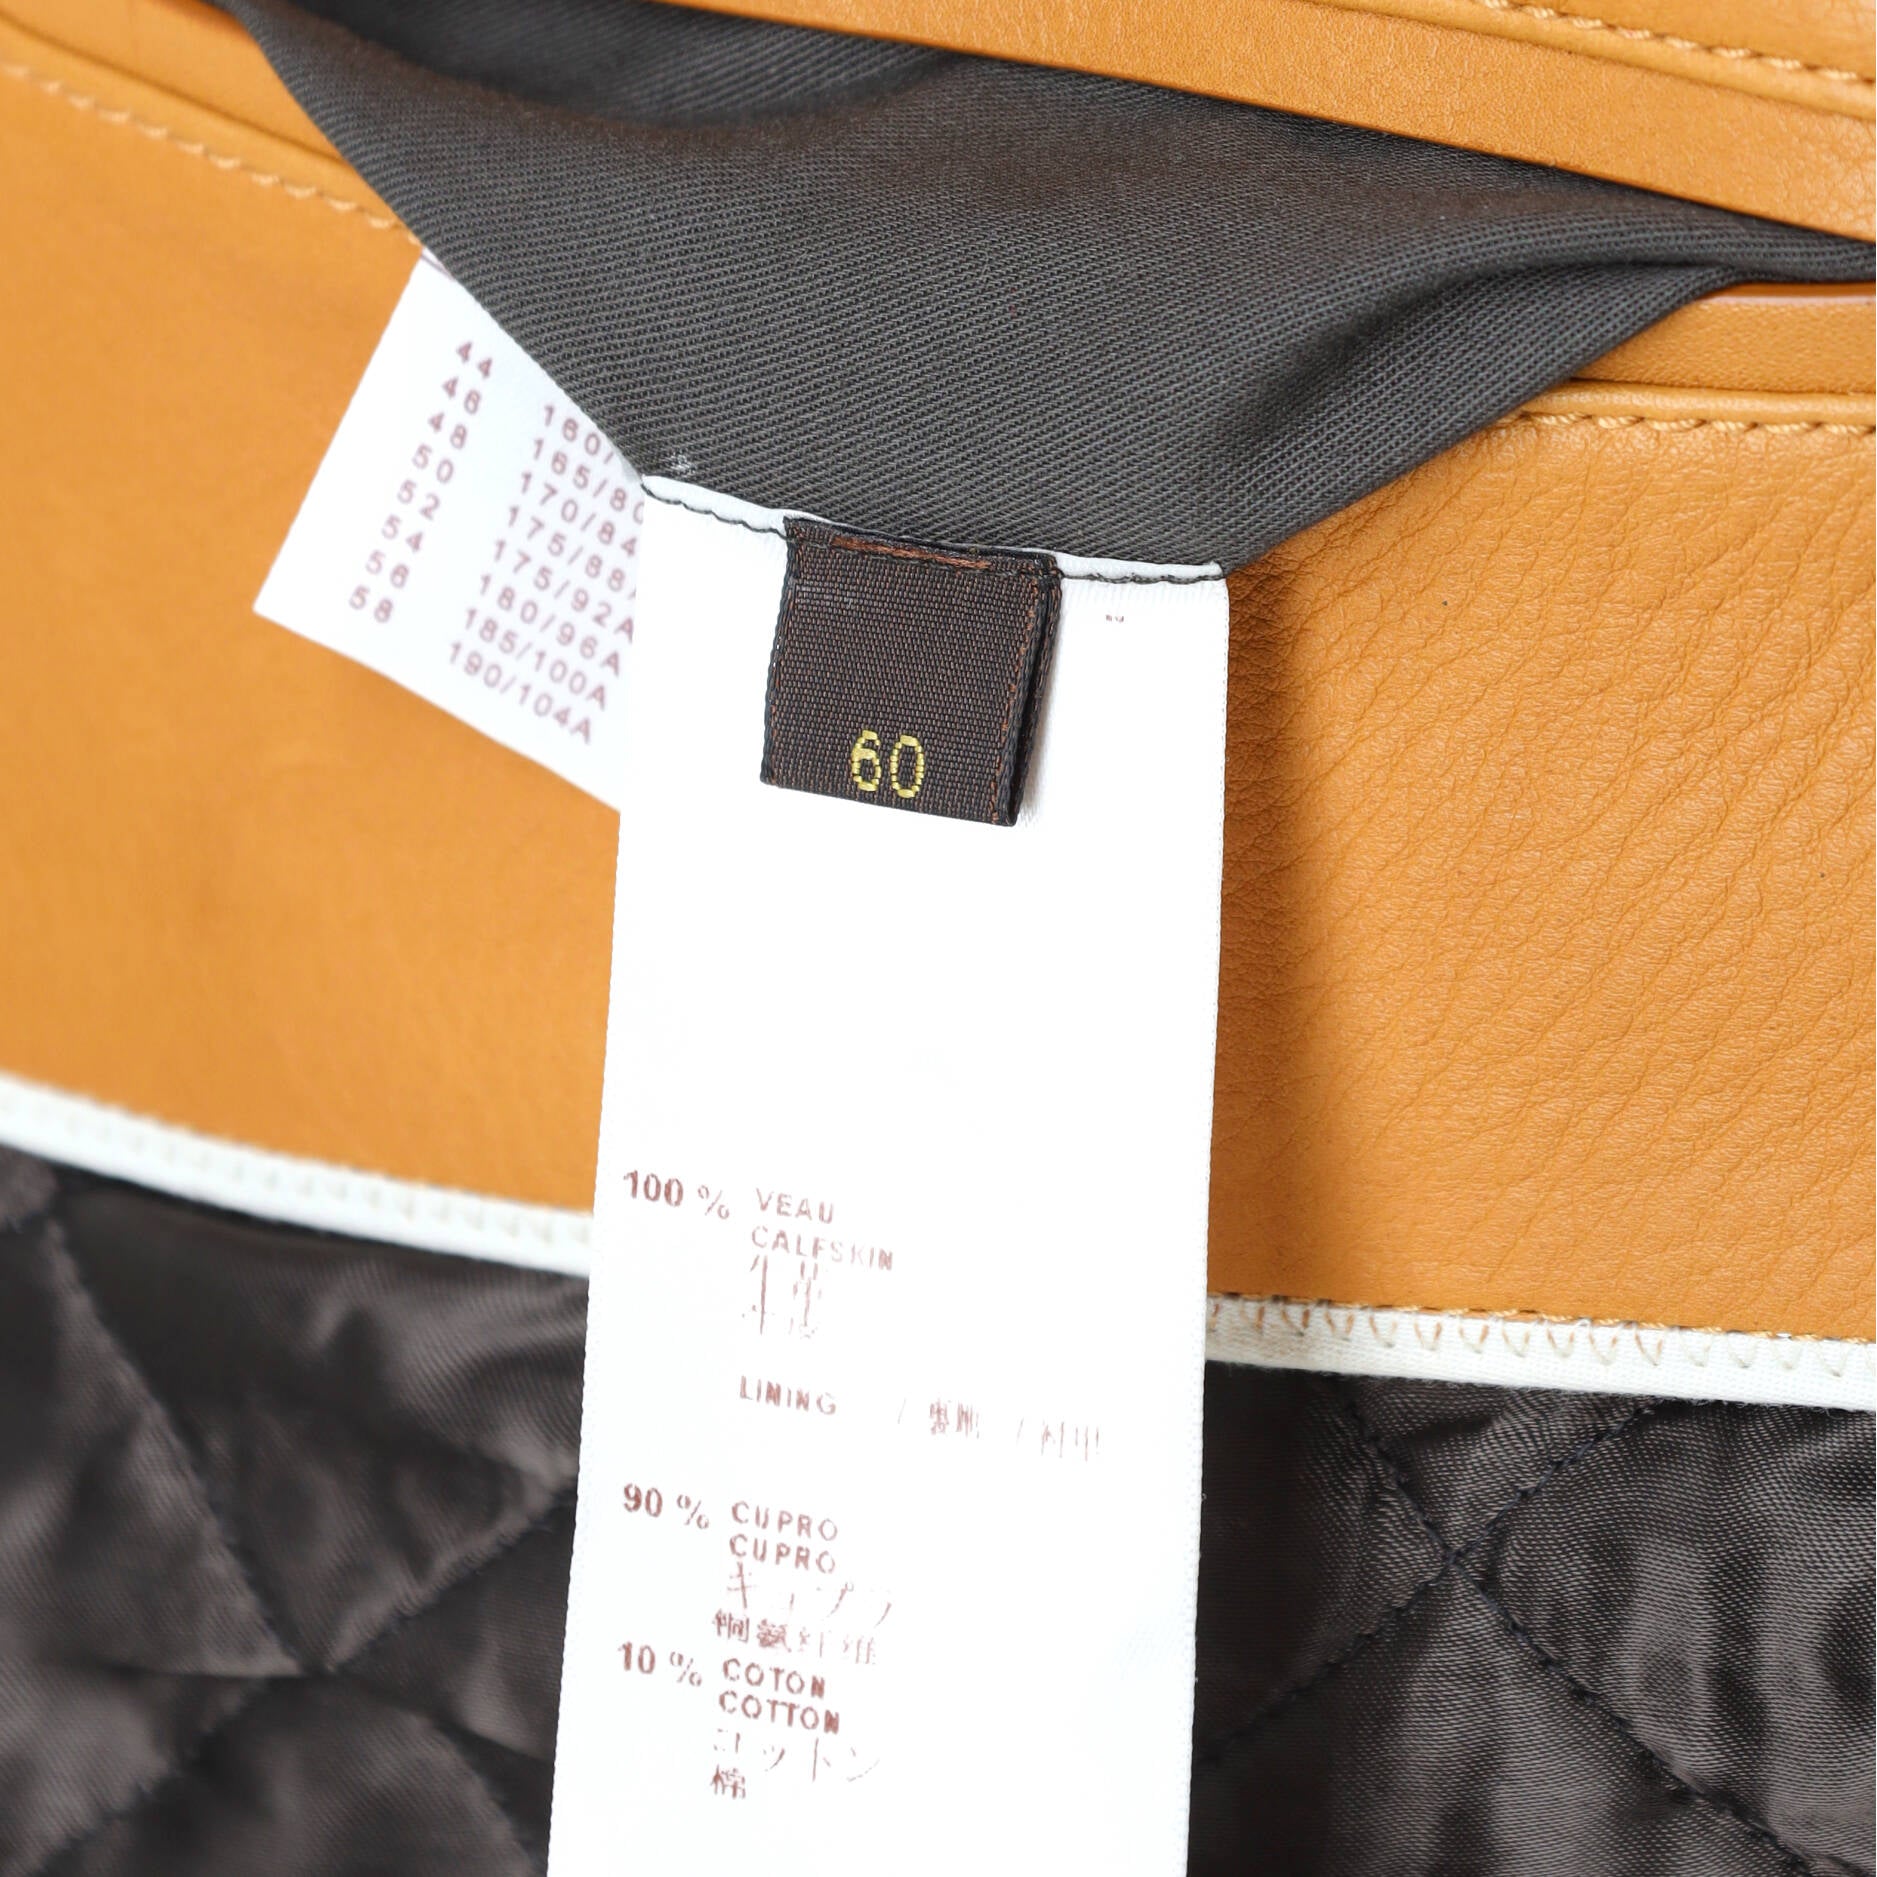 Louis Vuitton FW19 1 of 1 Monogram Reversible Wool Field Jacket Sample –  Ākaibu Store